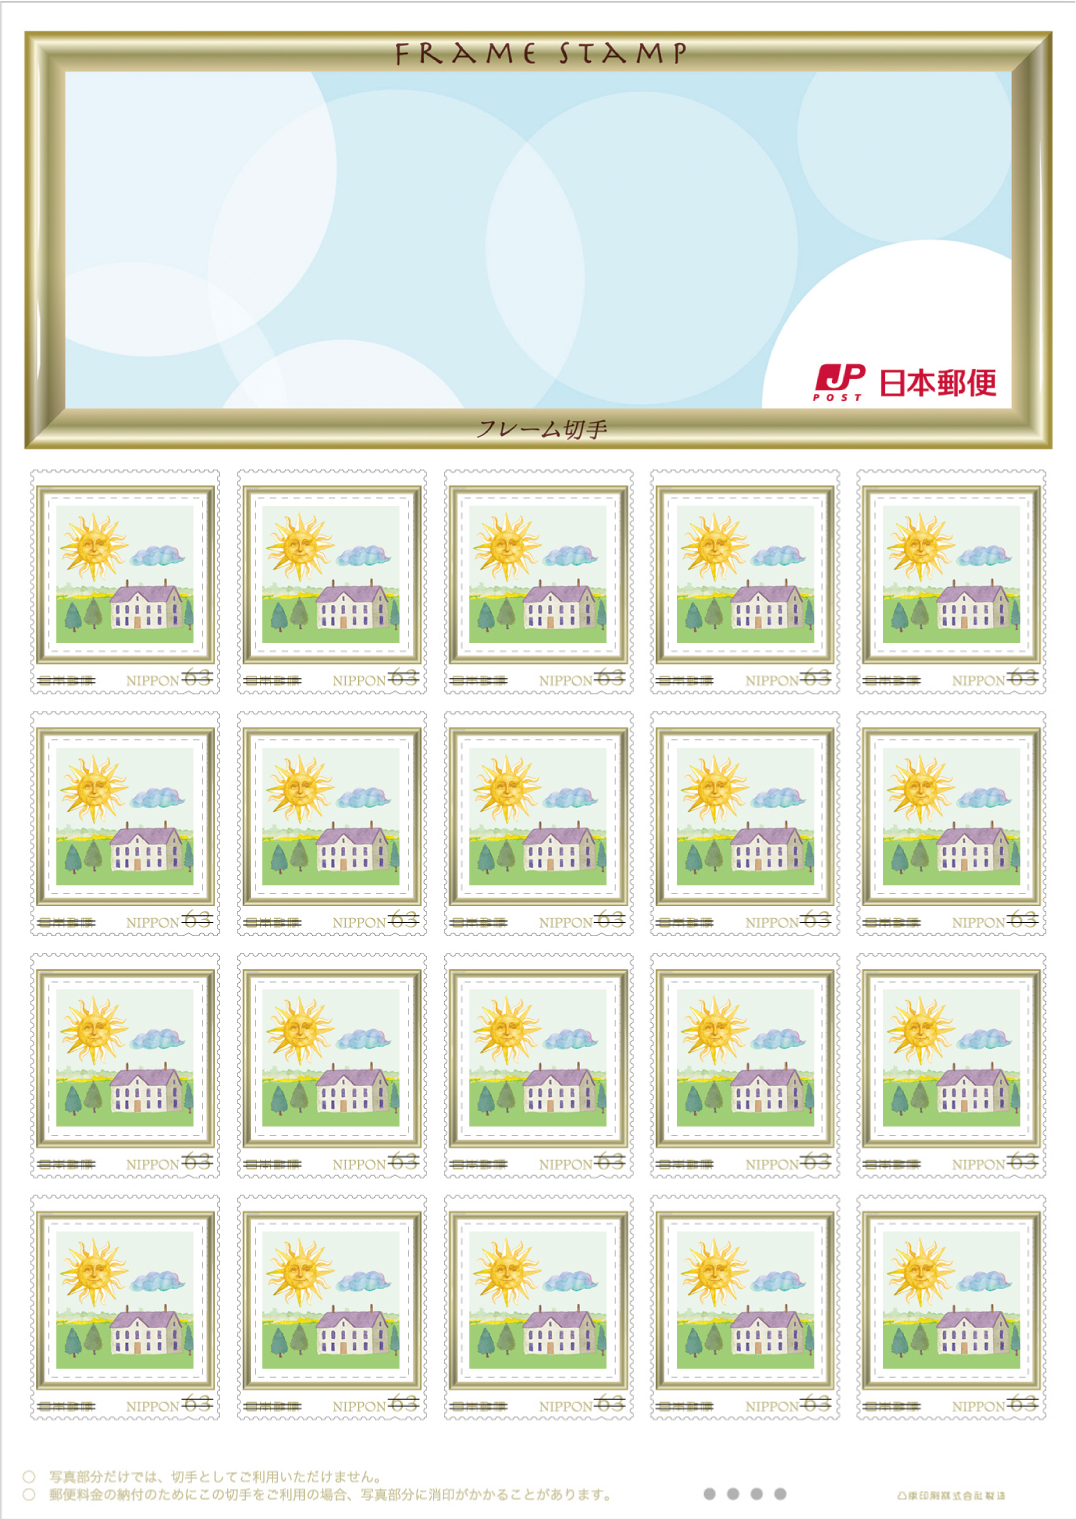 オリジナル切手作成サービス 日本郵便株式会社